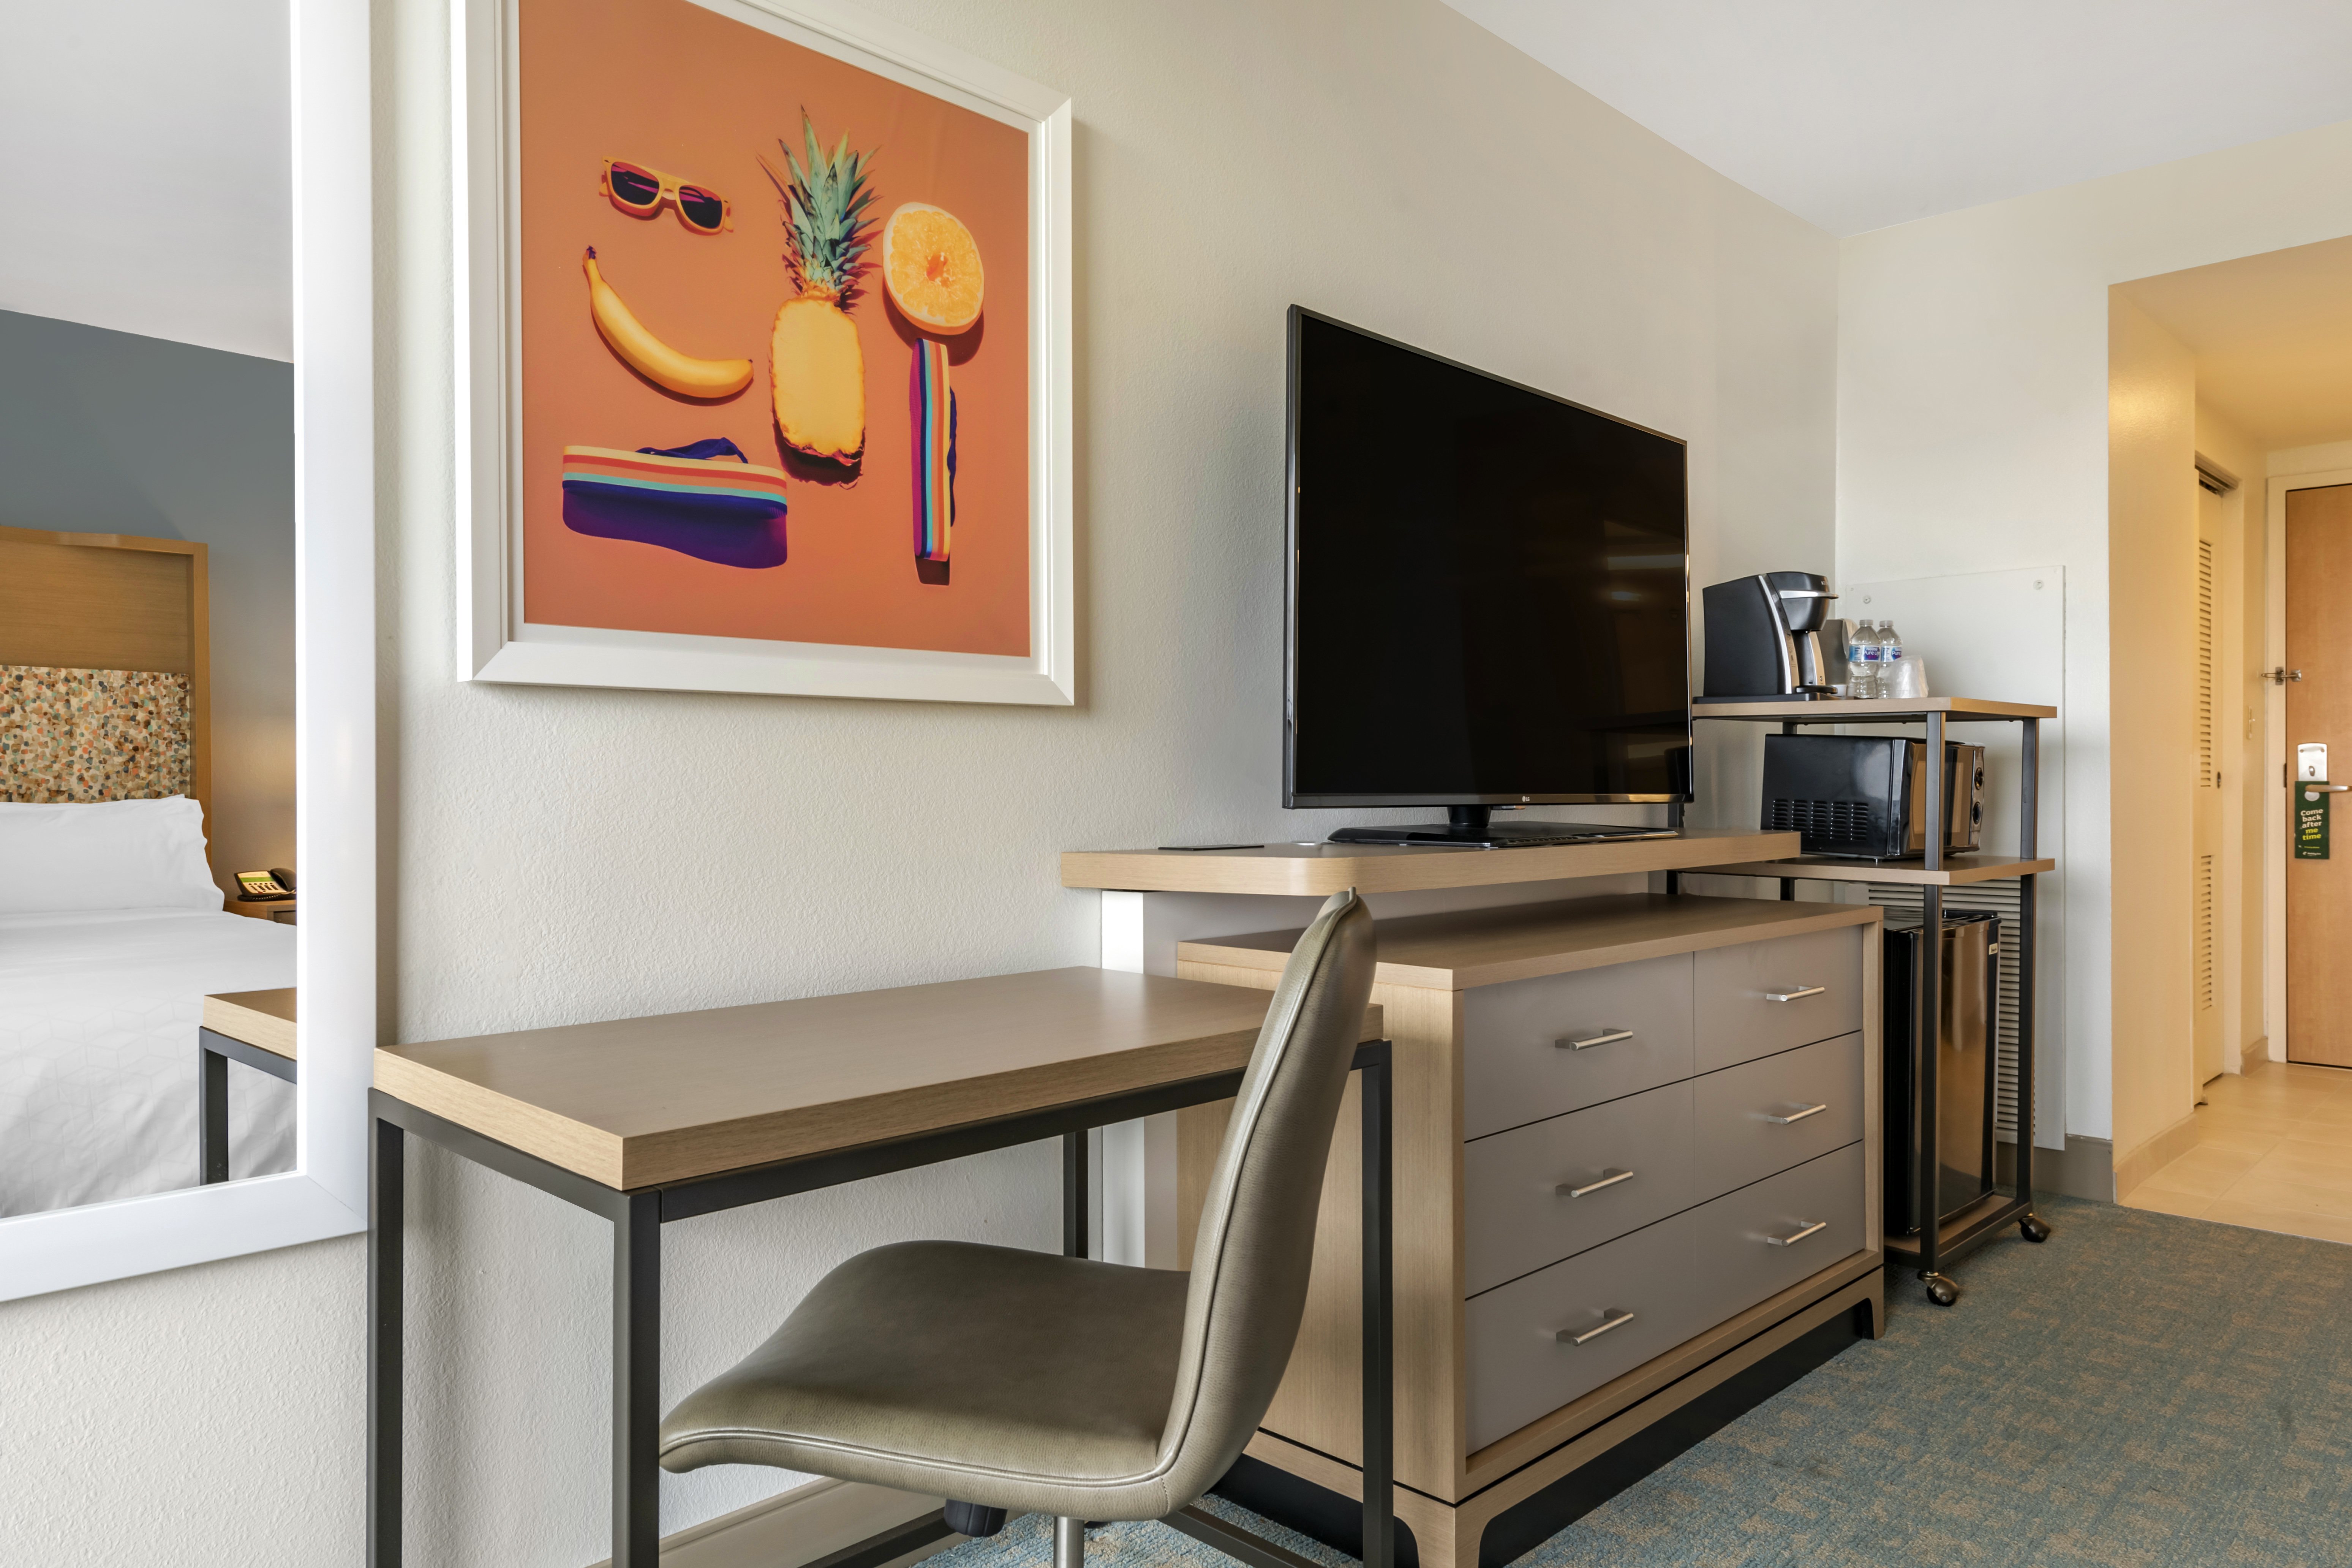 Guest Rooms feature Keurig Coffee Makers, Microwaves, Mini-Fridges